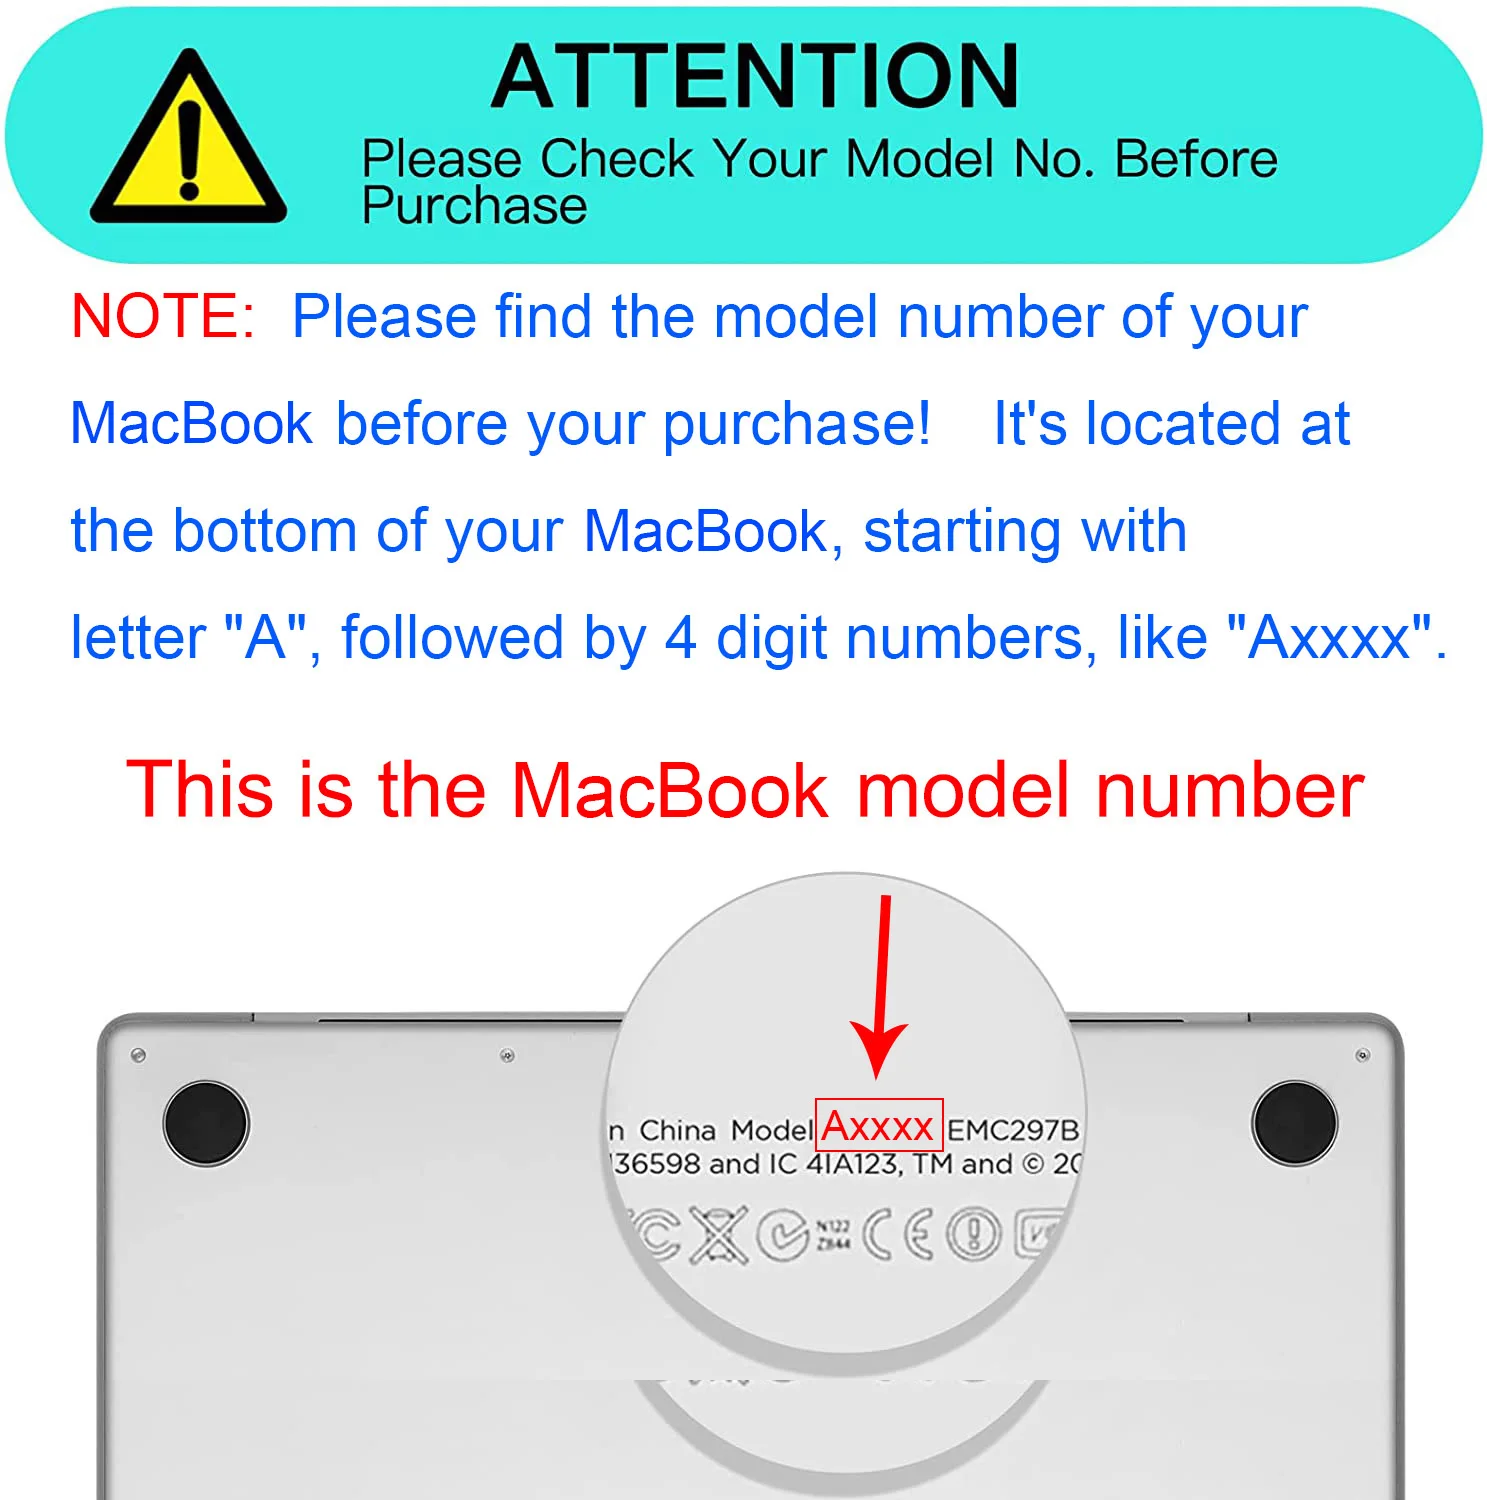 Apple MacBook Air Model No A2681